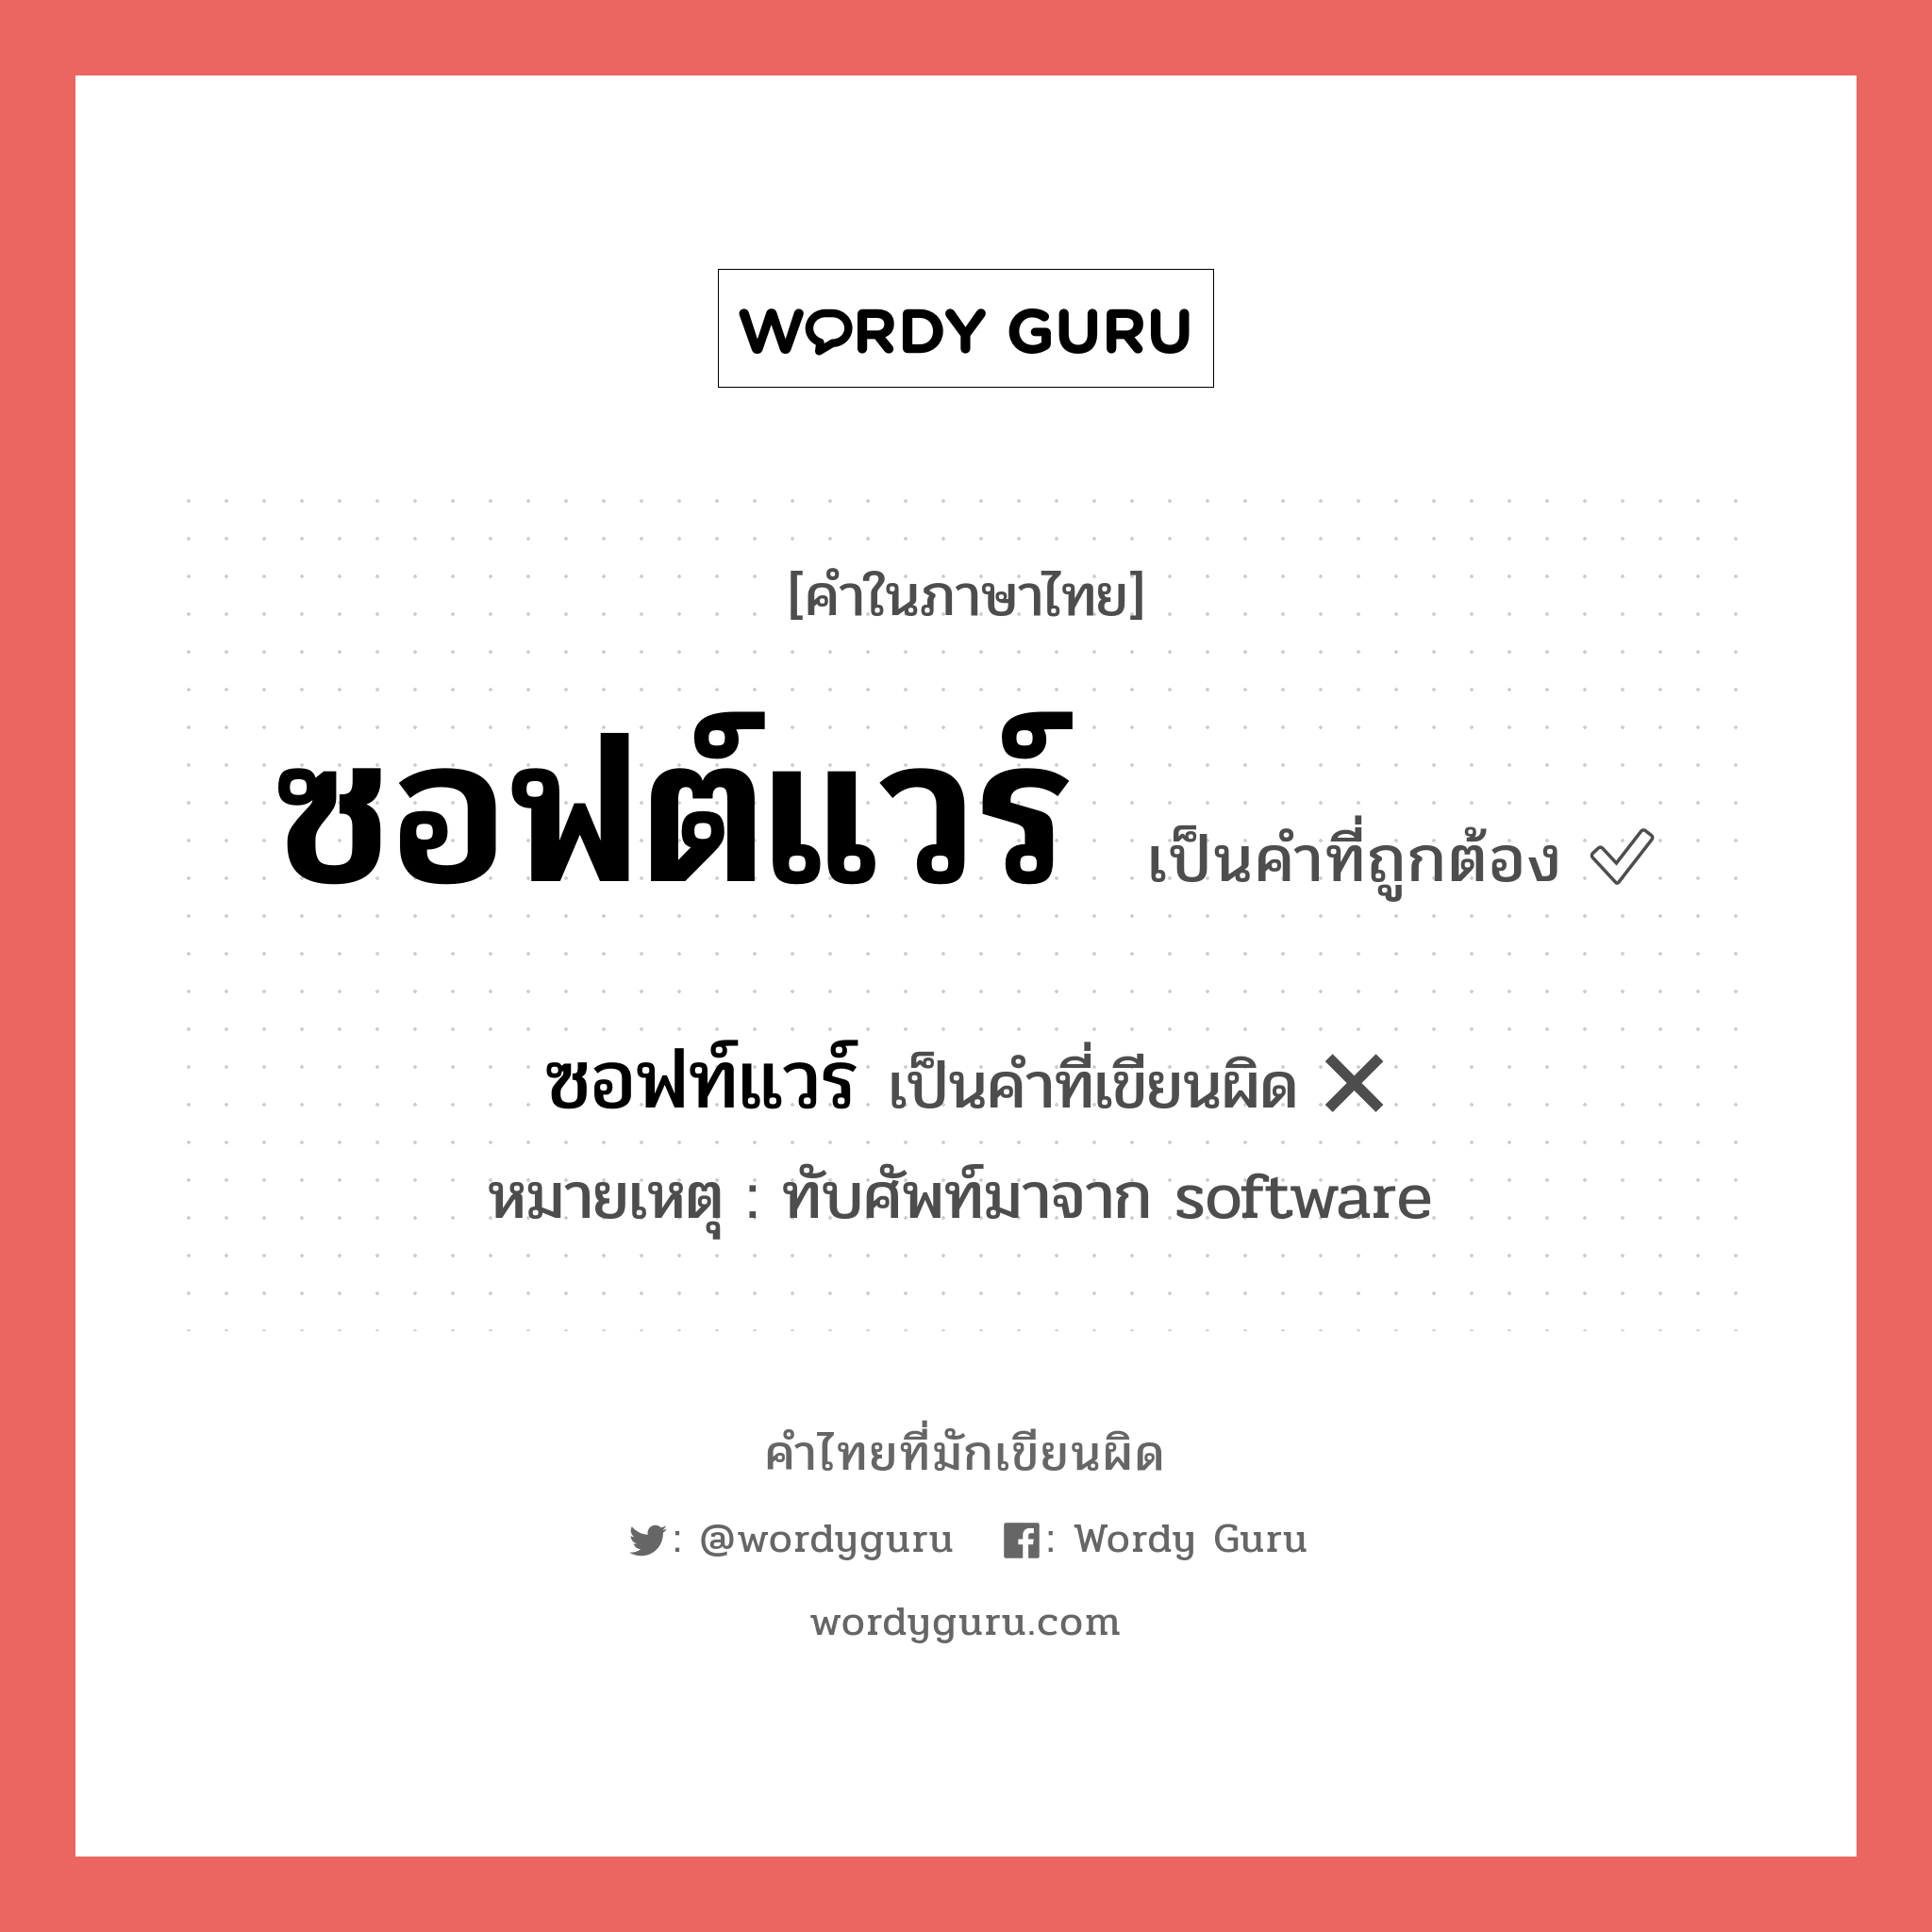 ซอฟท์แวร์ หรือ ซอฟต์แวร์ คำไหนเขียนถูก?, คำในภาษาไทยที่มักเขียนผิด ซอฟท์แวร์ คำที่ผิด ❌ ซอฟต์แวร์ หมายเหตุ ทับศัพท์มาจาก software